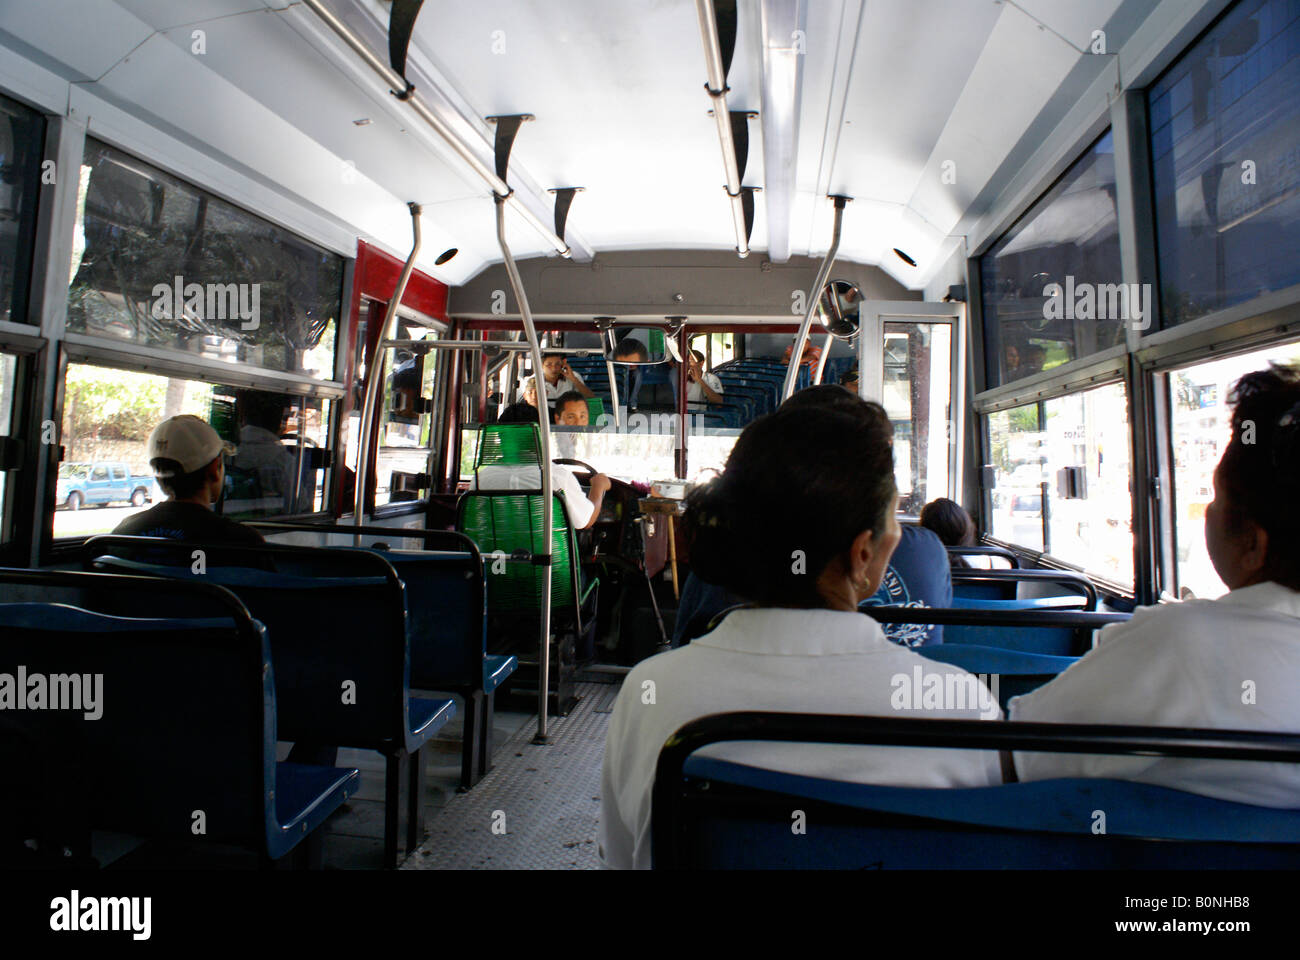 Innenraum eines öffentlichen Busses, Acapulco, Mexiko Stockfoto